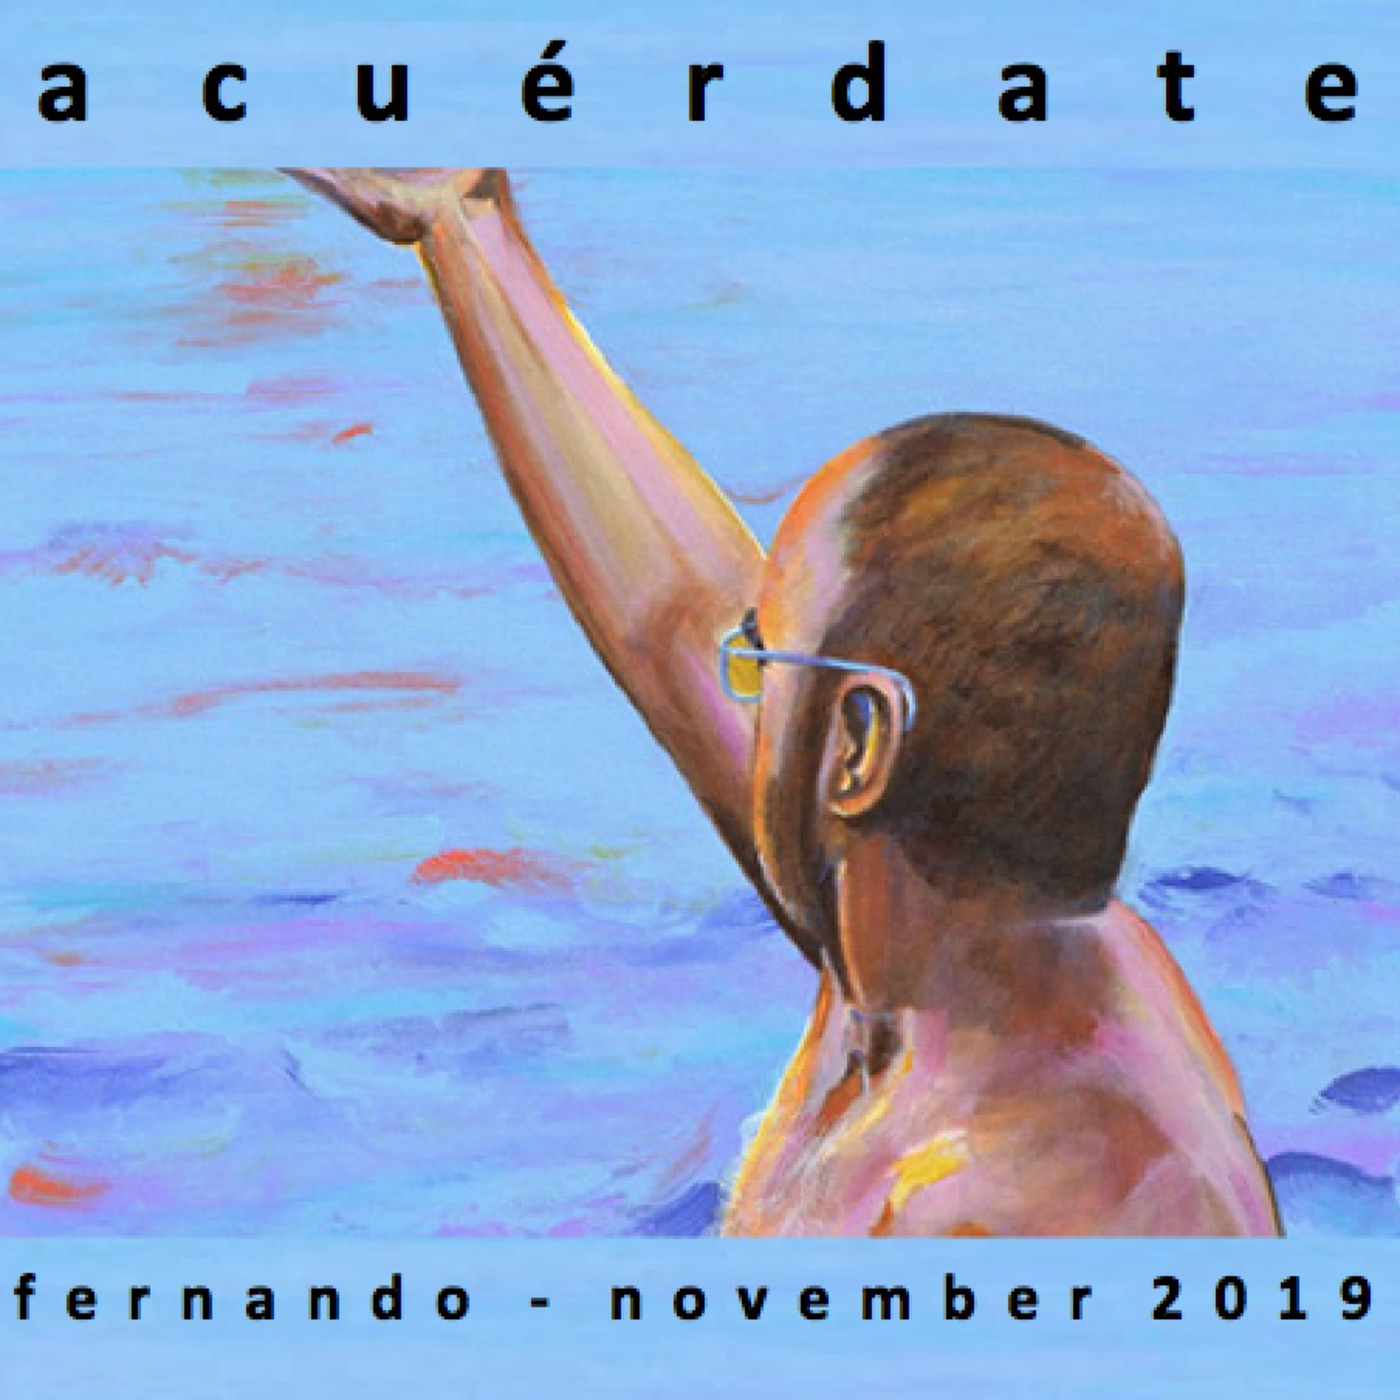 Fernando - Acuérdate - November 2019